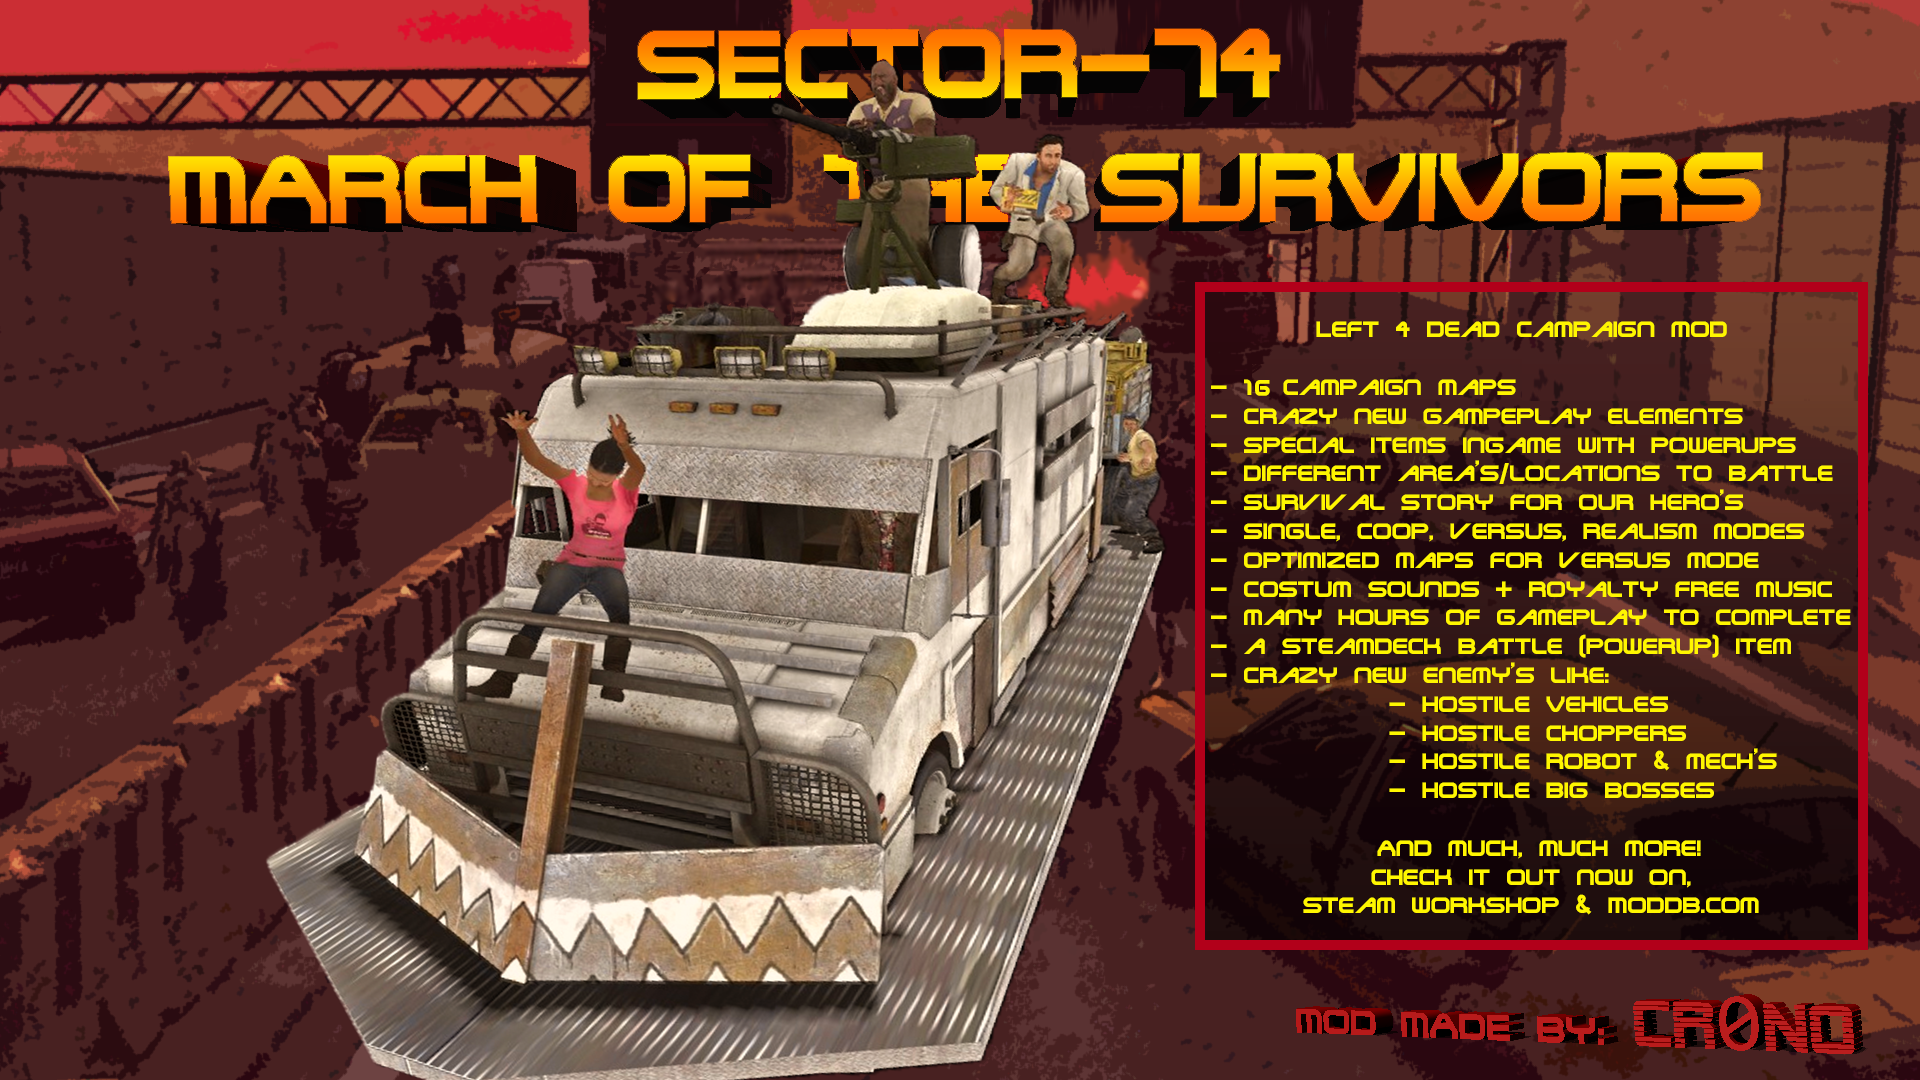 Download Survivors Mods for Left 4 Dead 2 